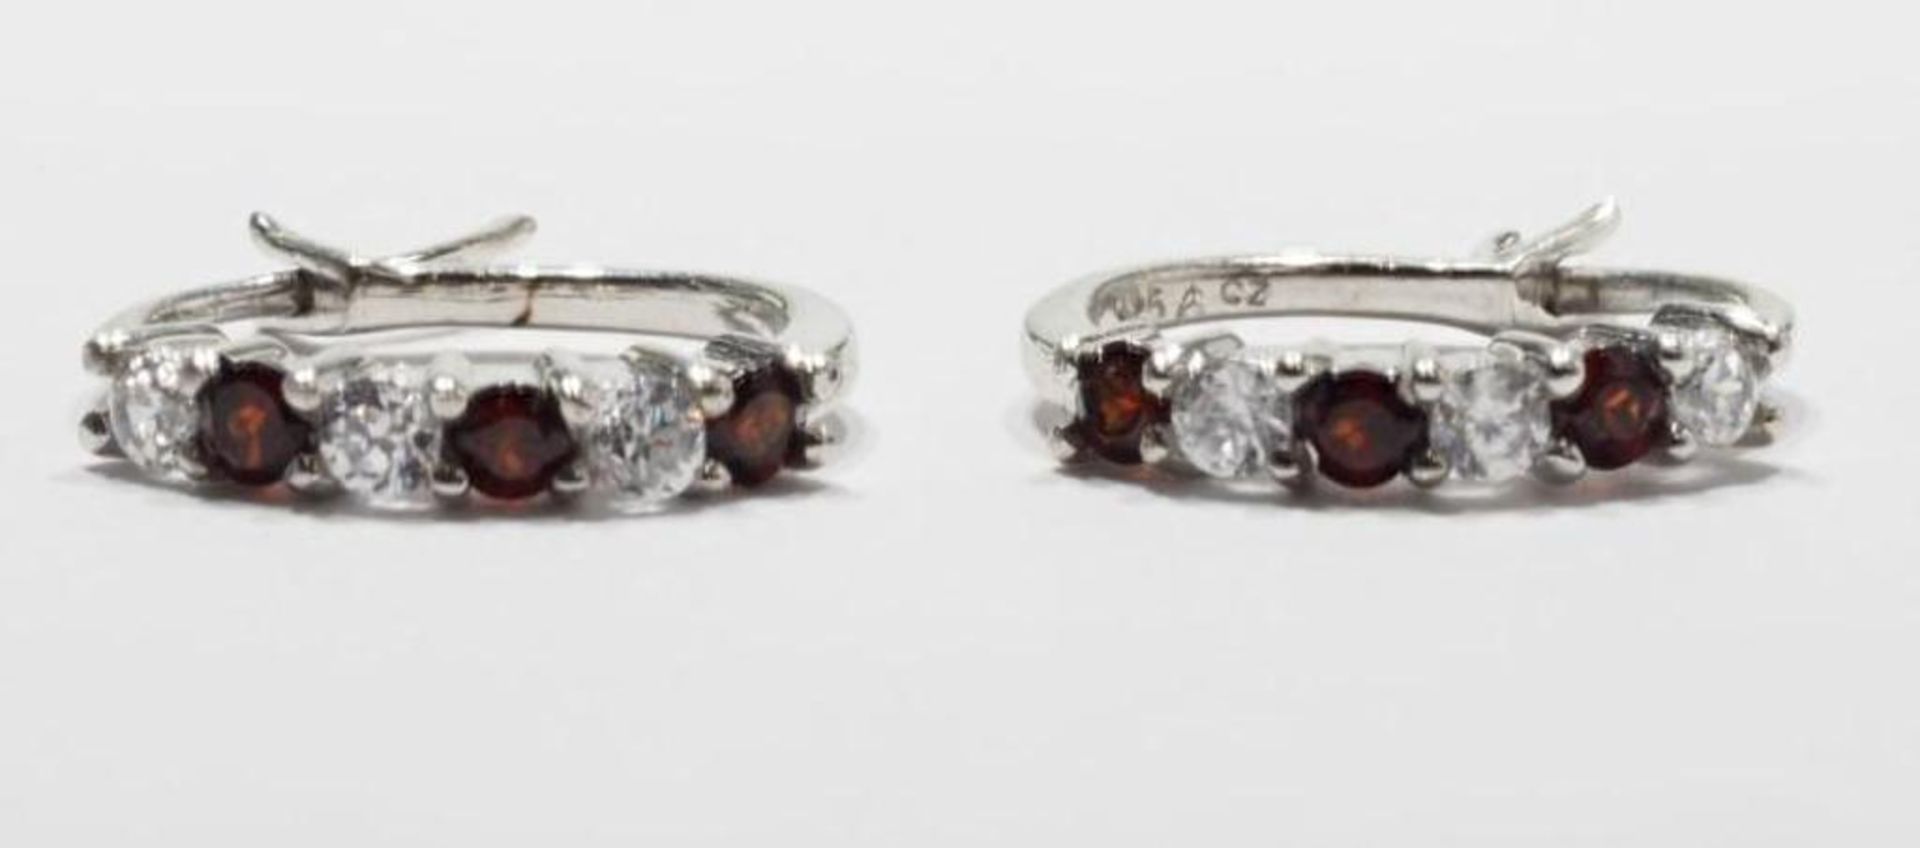 2 Sterling Silver Garnet and Citrine Earrings (Birthstone Jan & Dec) Retail $200 - Image 3 of 3